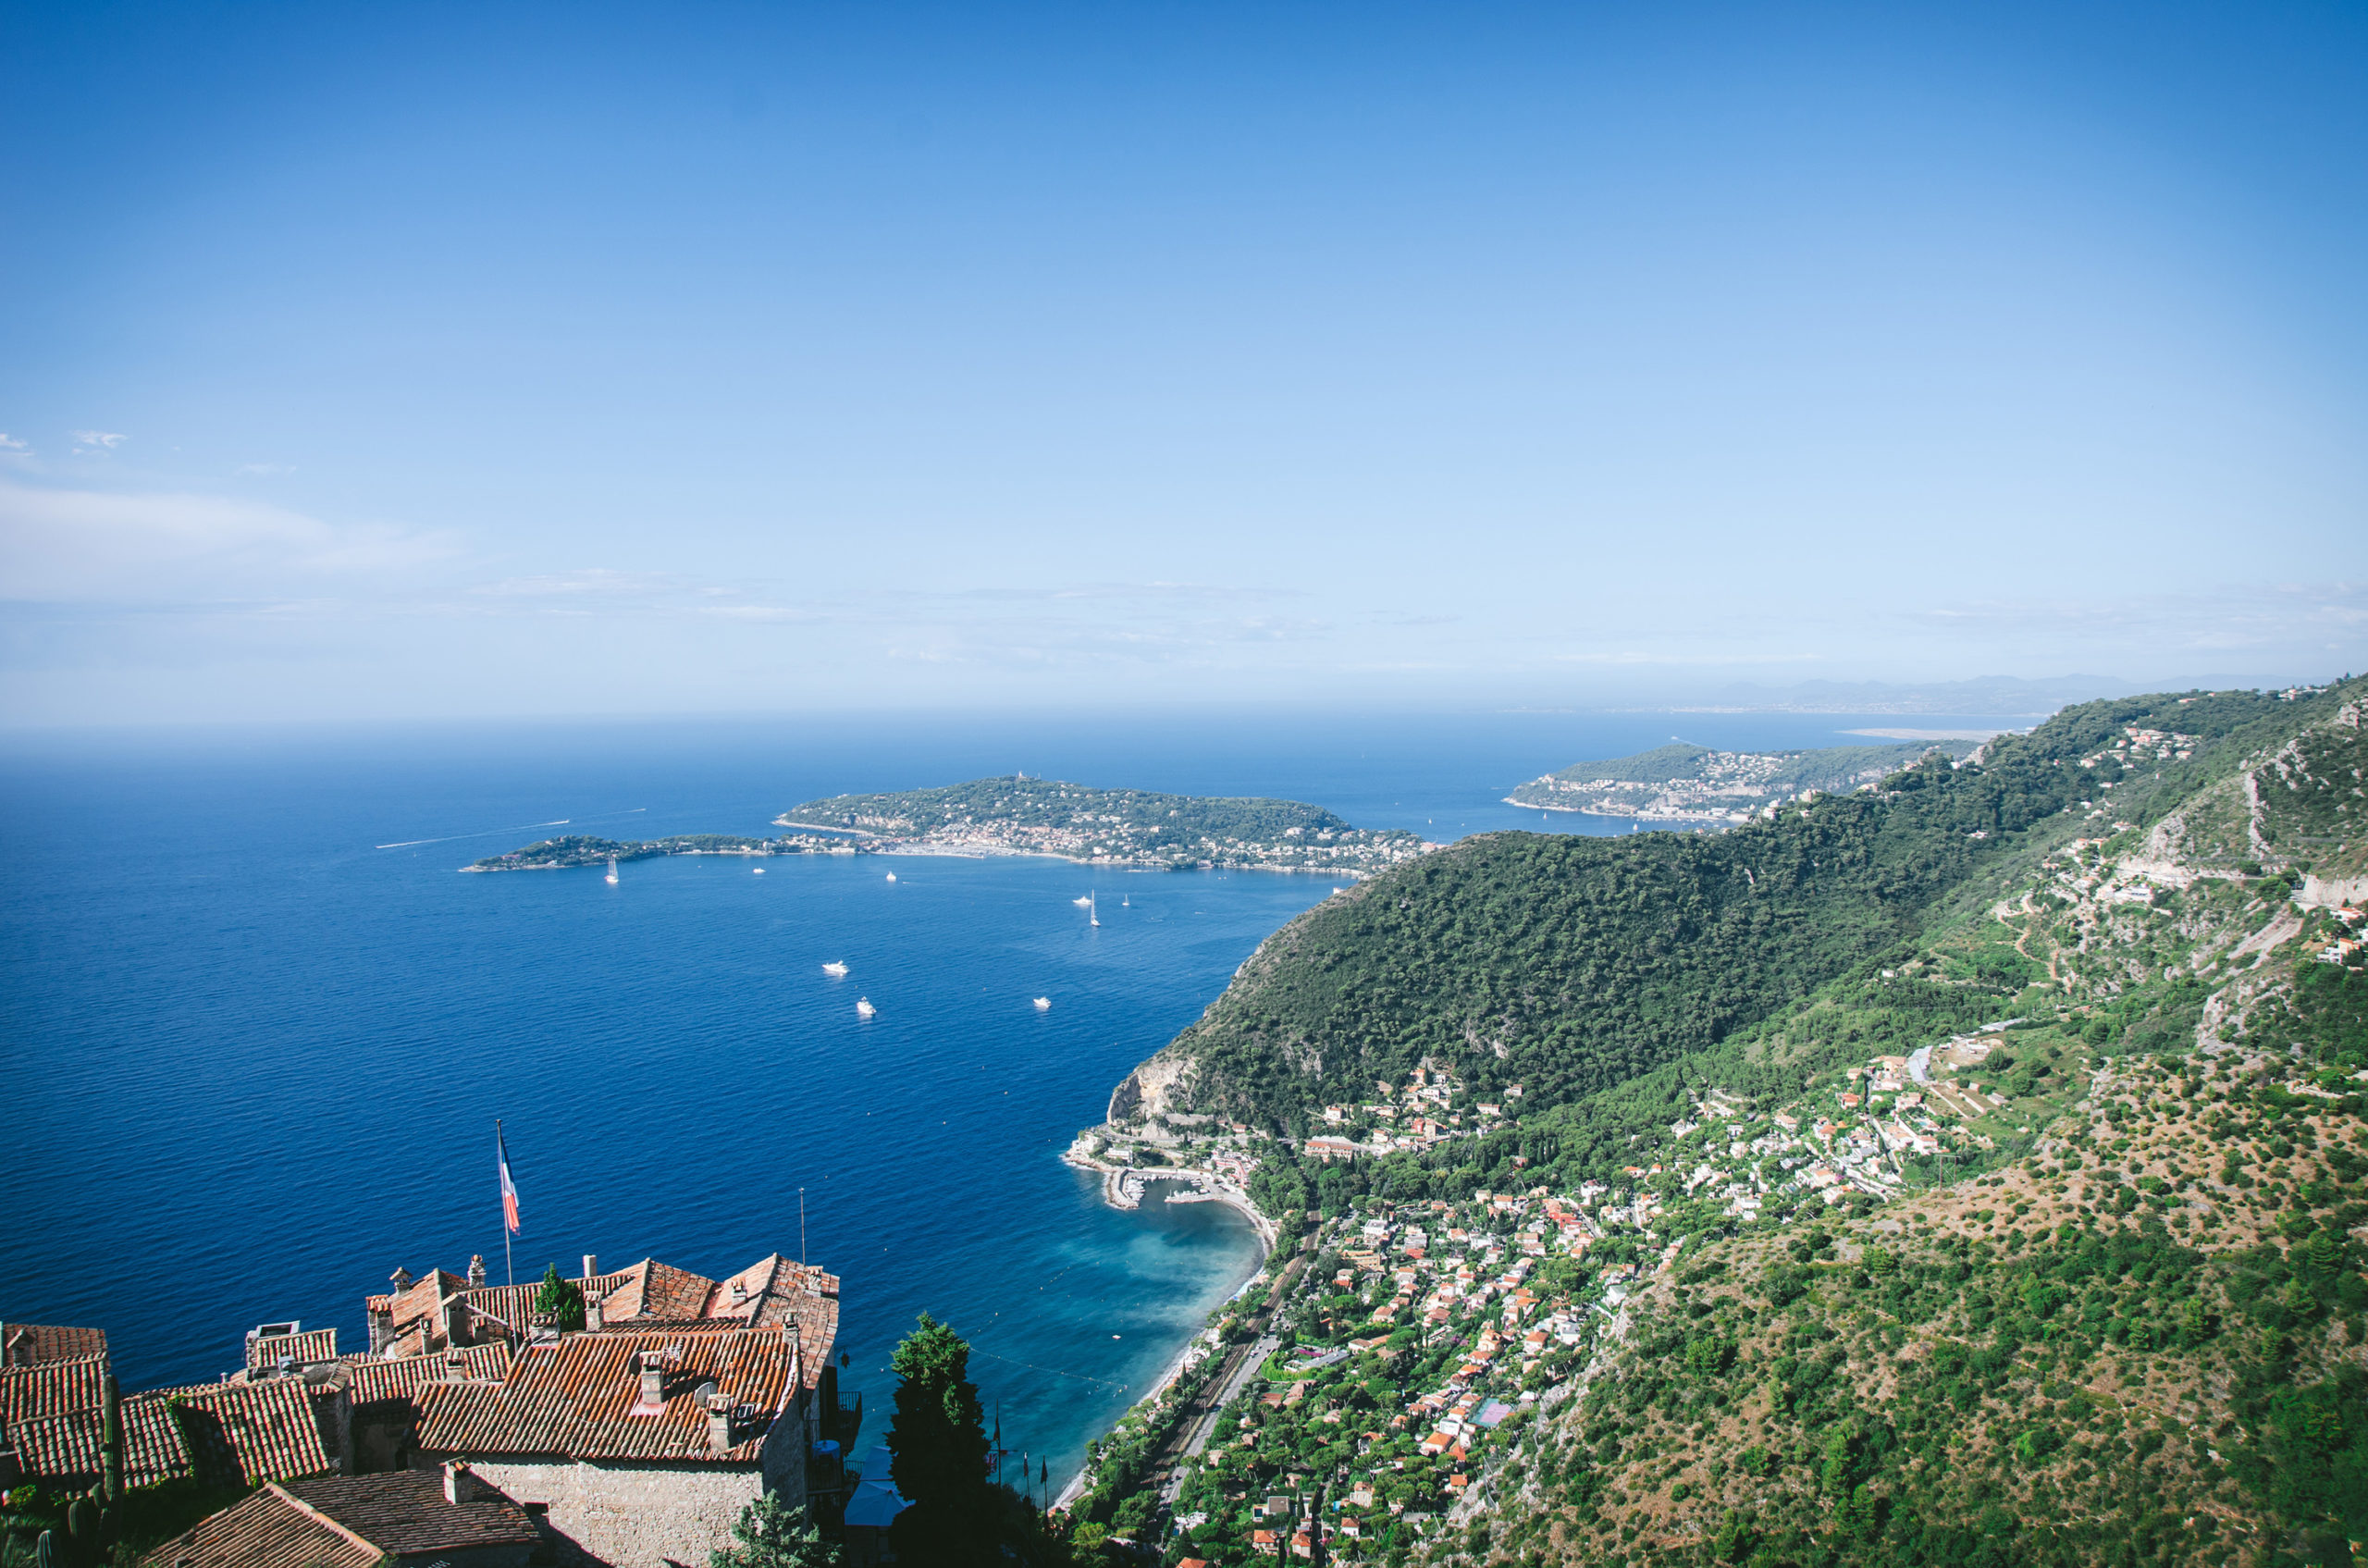 5 choses à faire sans voiture dans la Riviera autour de Nice - Jardin botanique Eze